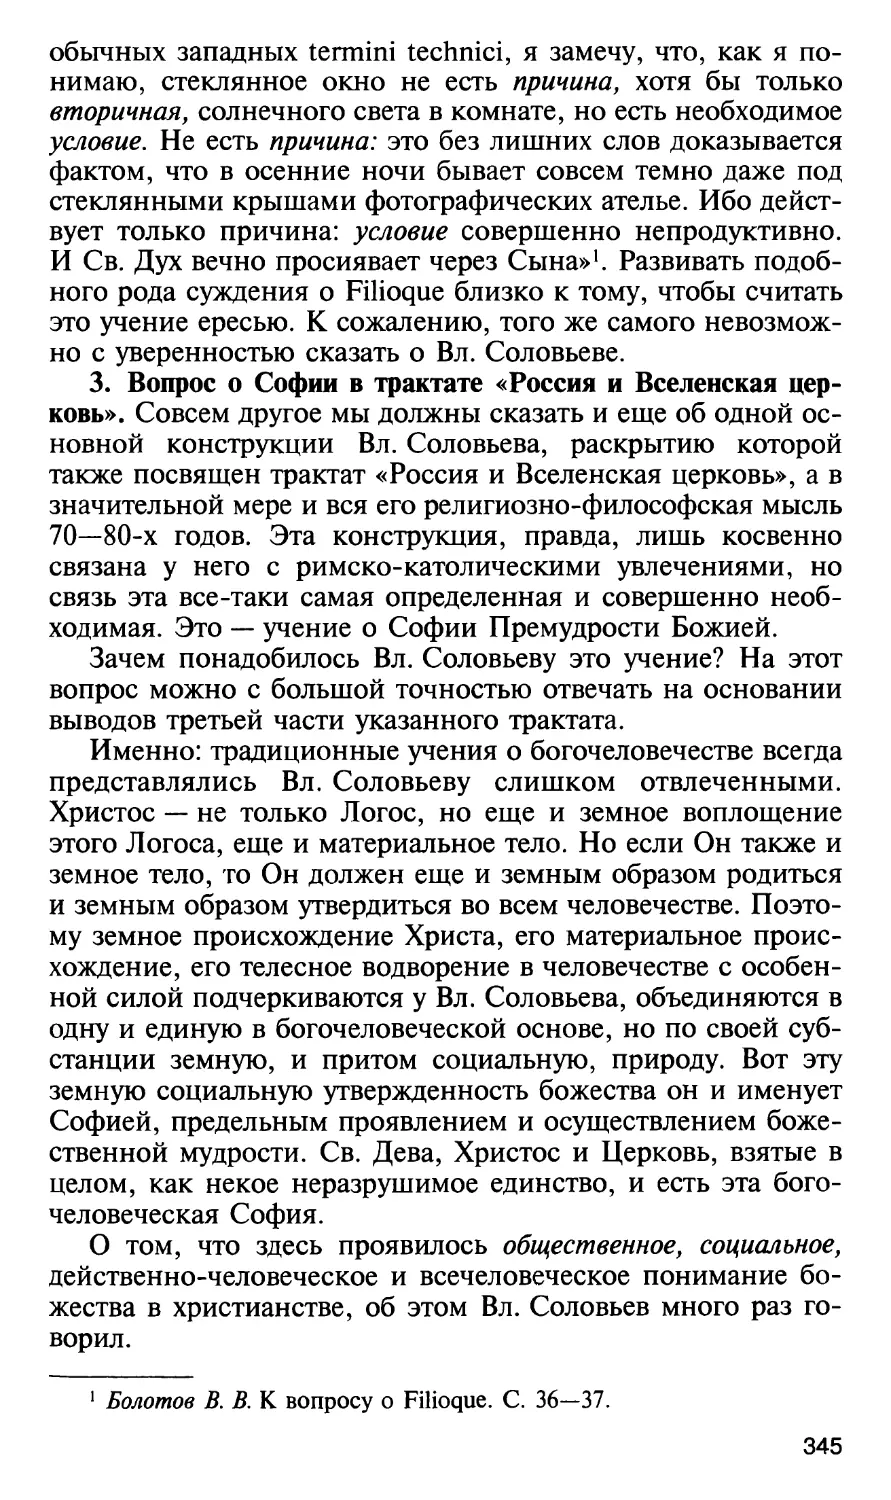 3. Вопрос о Софии в трактате «Россия и Вселенская церковь»